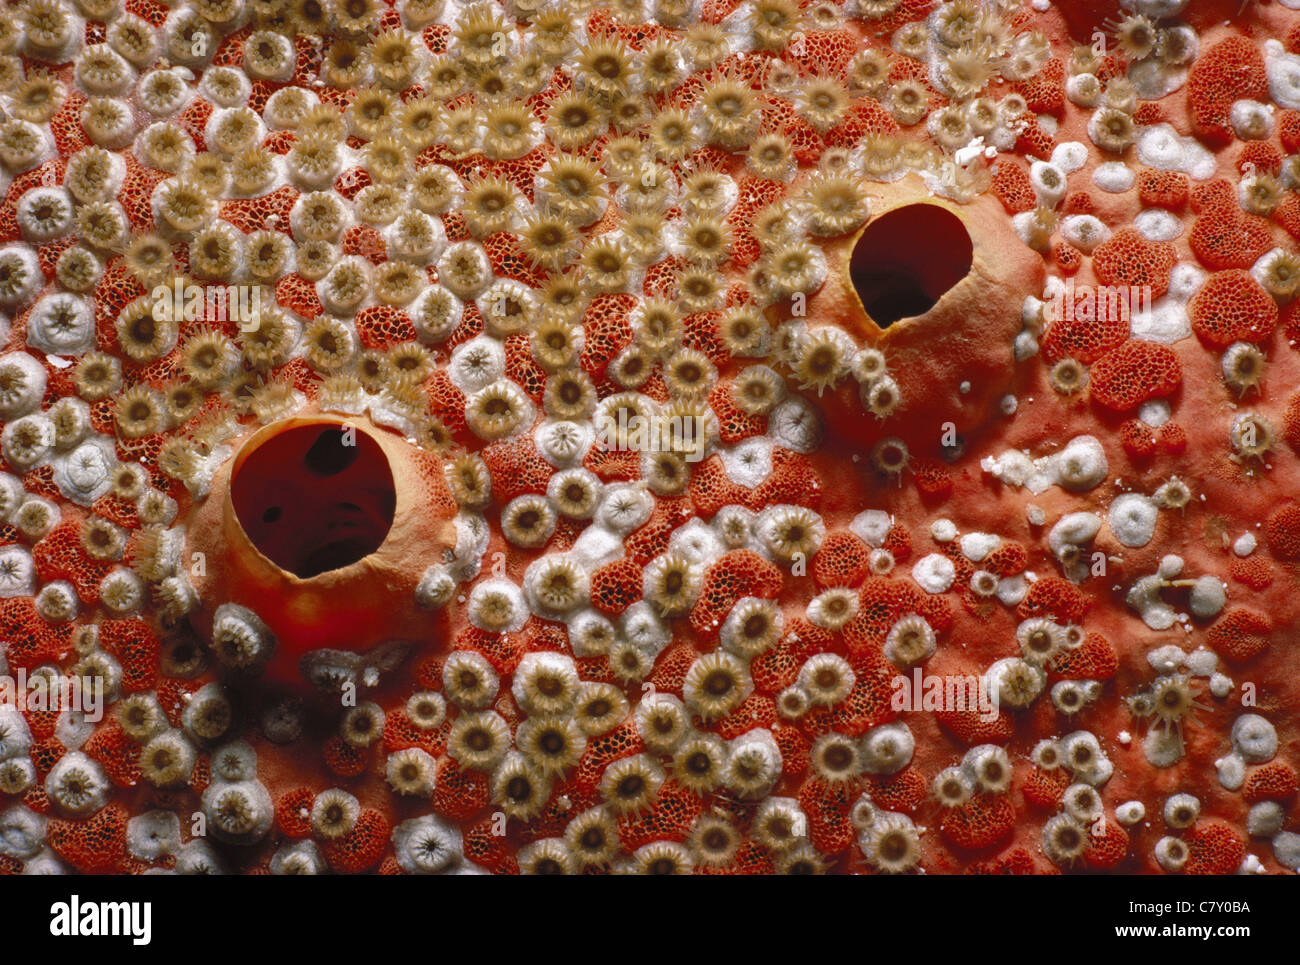 Schwamm, verkrustet von Kolonie von Blutungen Zähne Bryozoan (Trematooecia Aviculifera), Grand Turk Island - Karibik Stockfoto